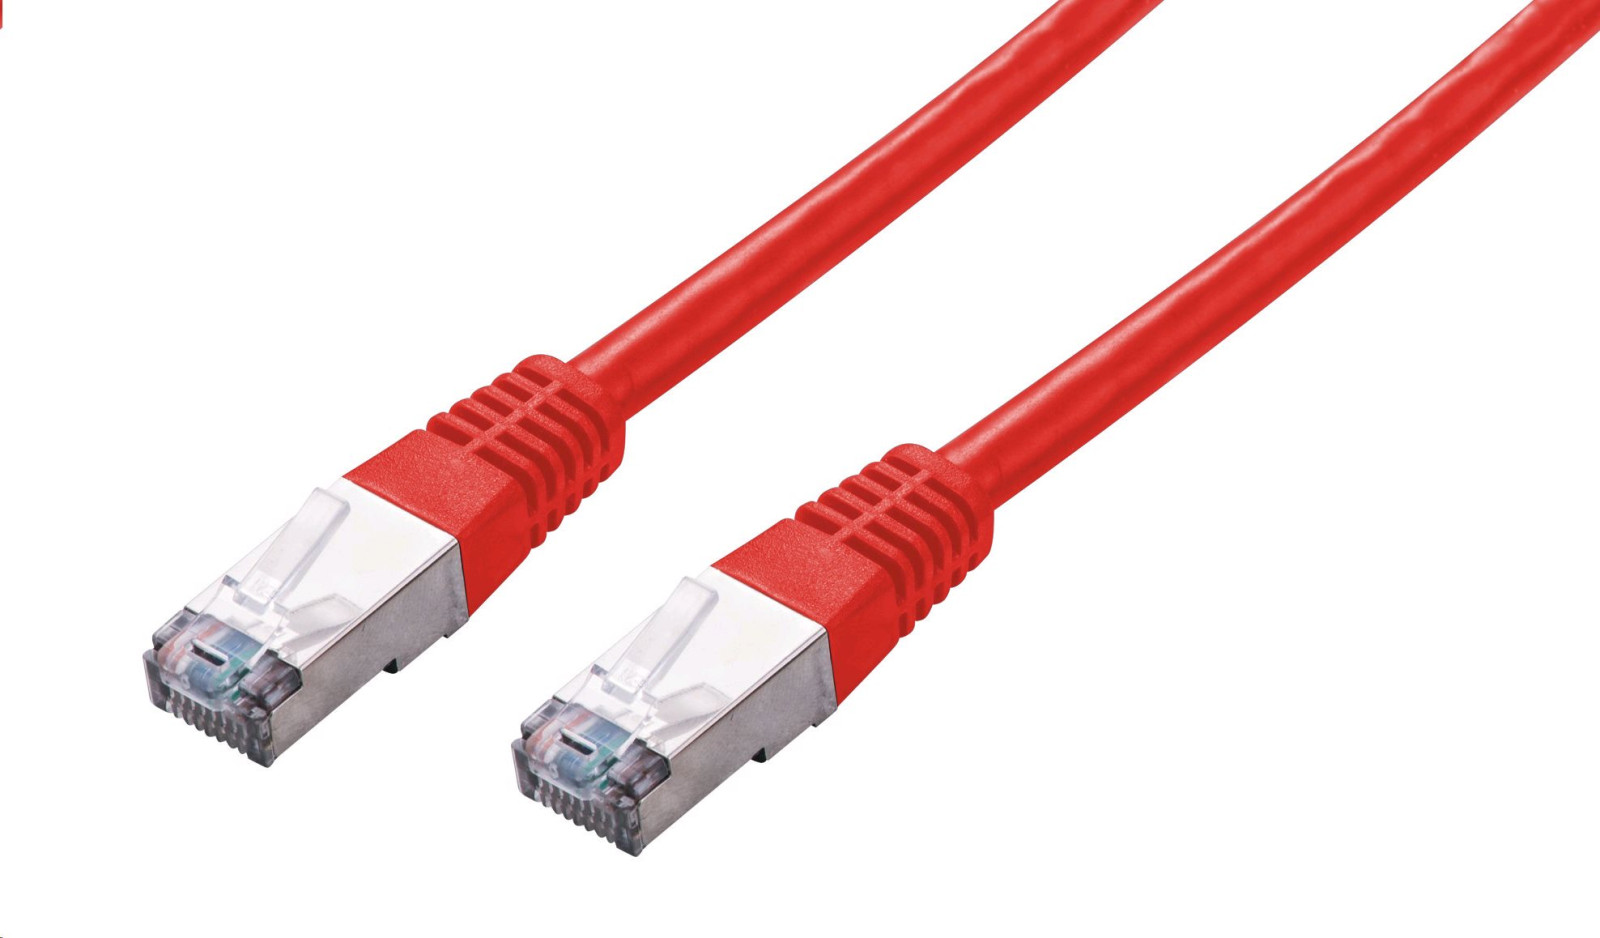 C-TECH Kabel patchcord Cat5e, FTP, červený, 0,5m